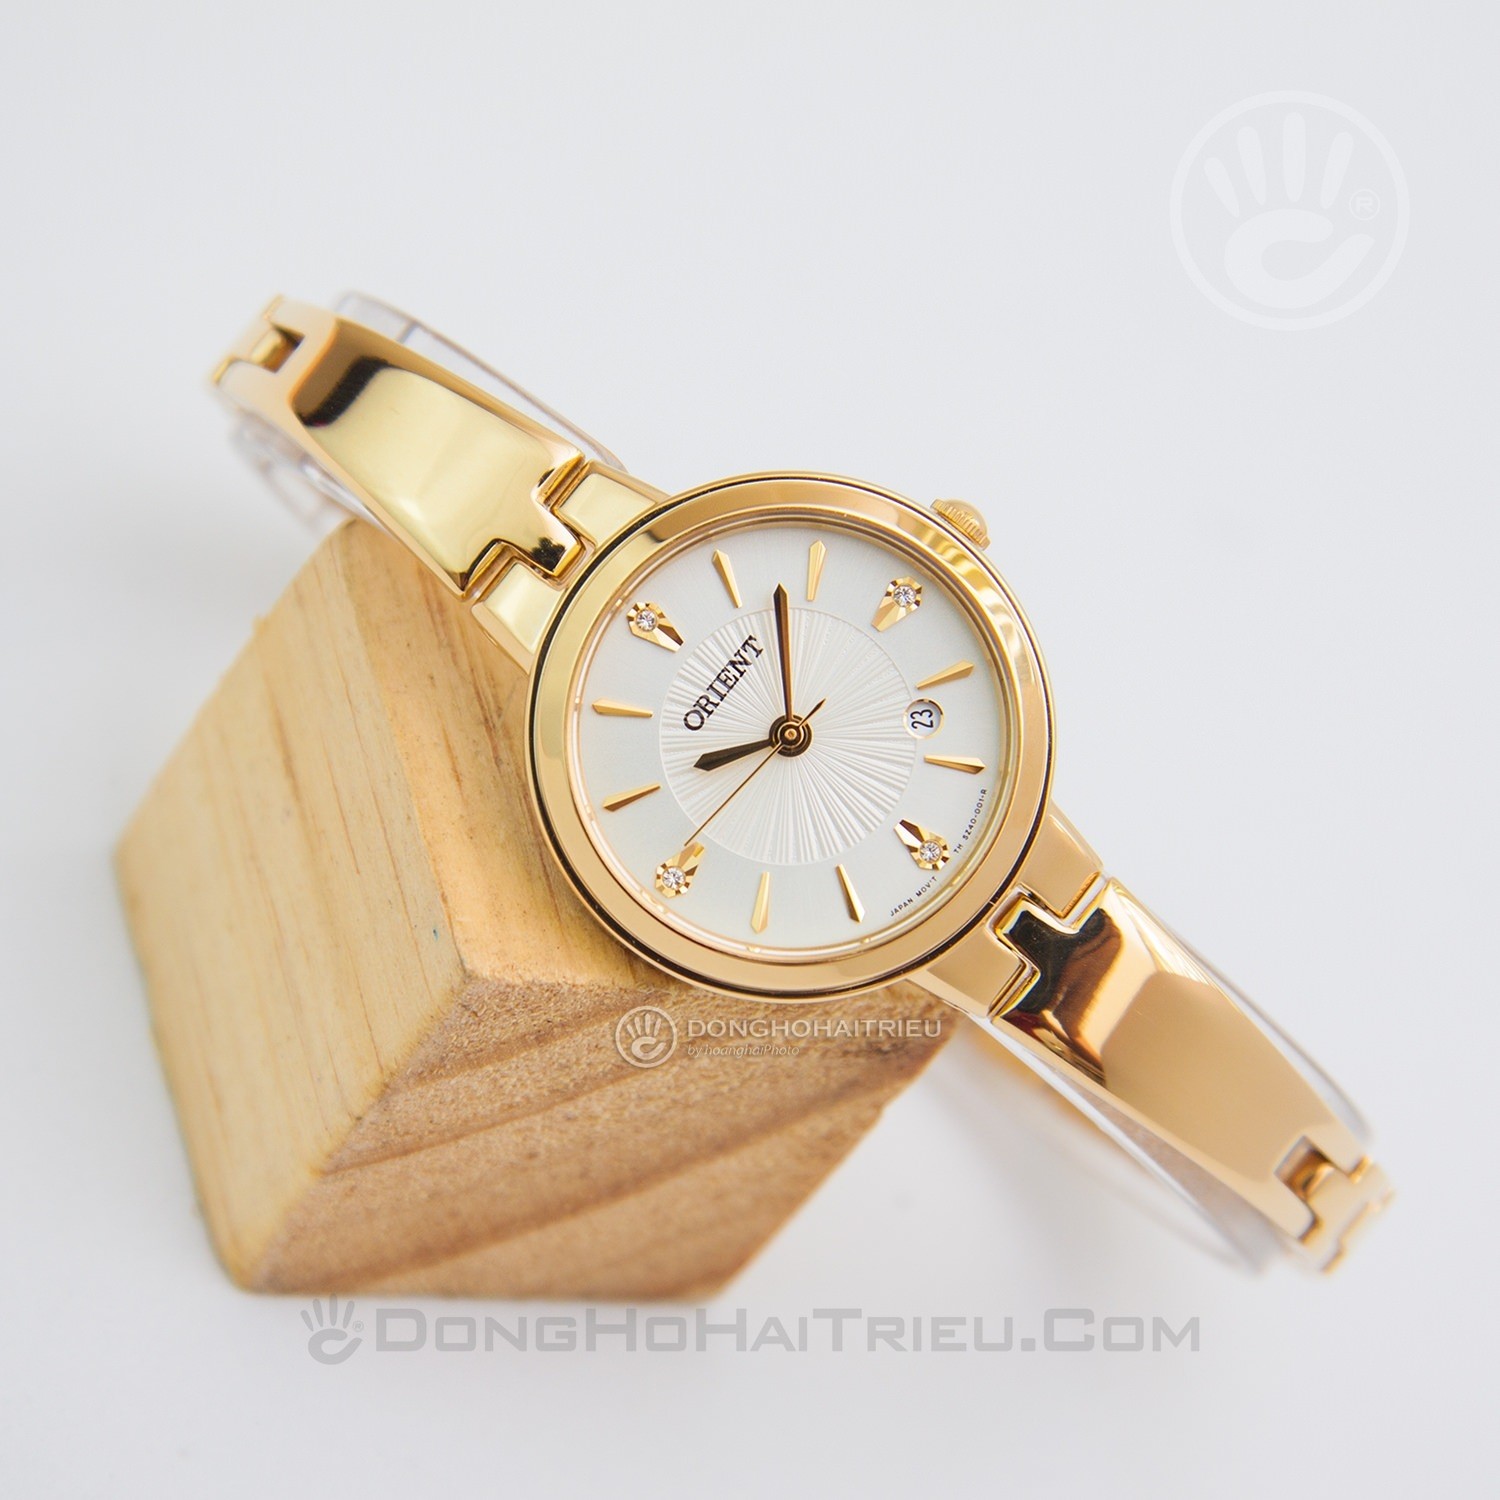 Khám phá chiếc đồng hồ lắc tay Orient FSZ40003W0 được thiết kế thanh lịch với mạ vàng bóng loáng. Với độ chính xác và độ bền tuyệt vời, chiếc đồng hồ này sẽ trở thành món phụ kiện yêu thích của bạn. Click để xem ảnh và khám phá thêm về chiếc đồng hồ này ngay hôm nay!